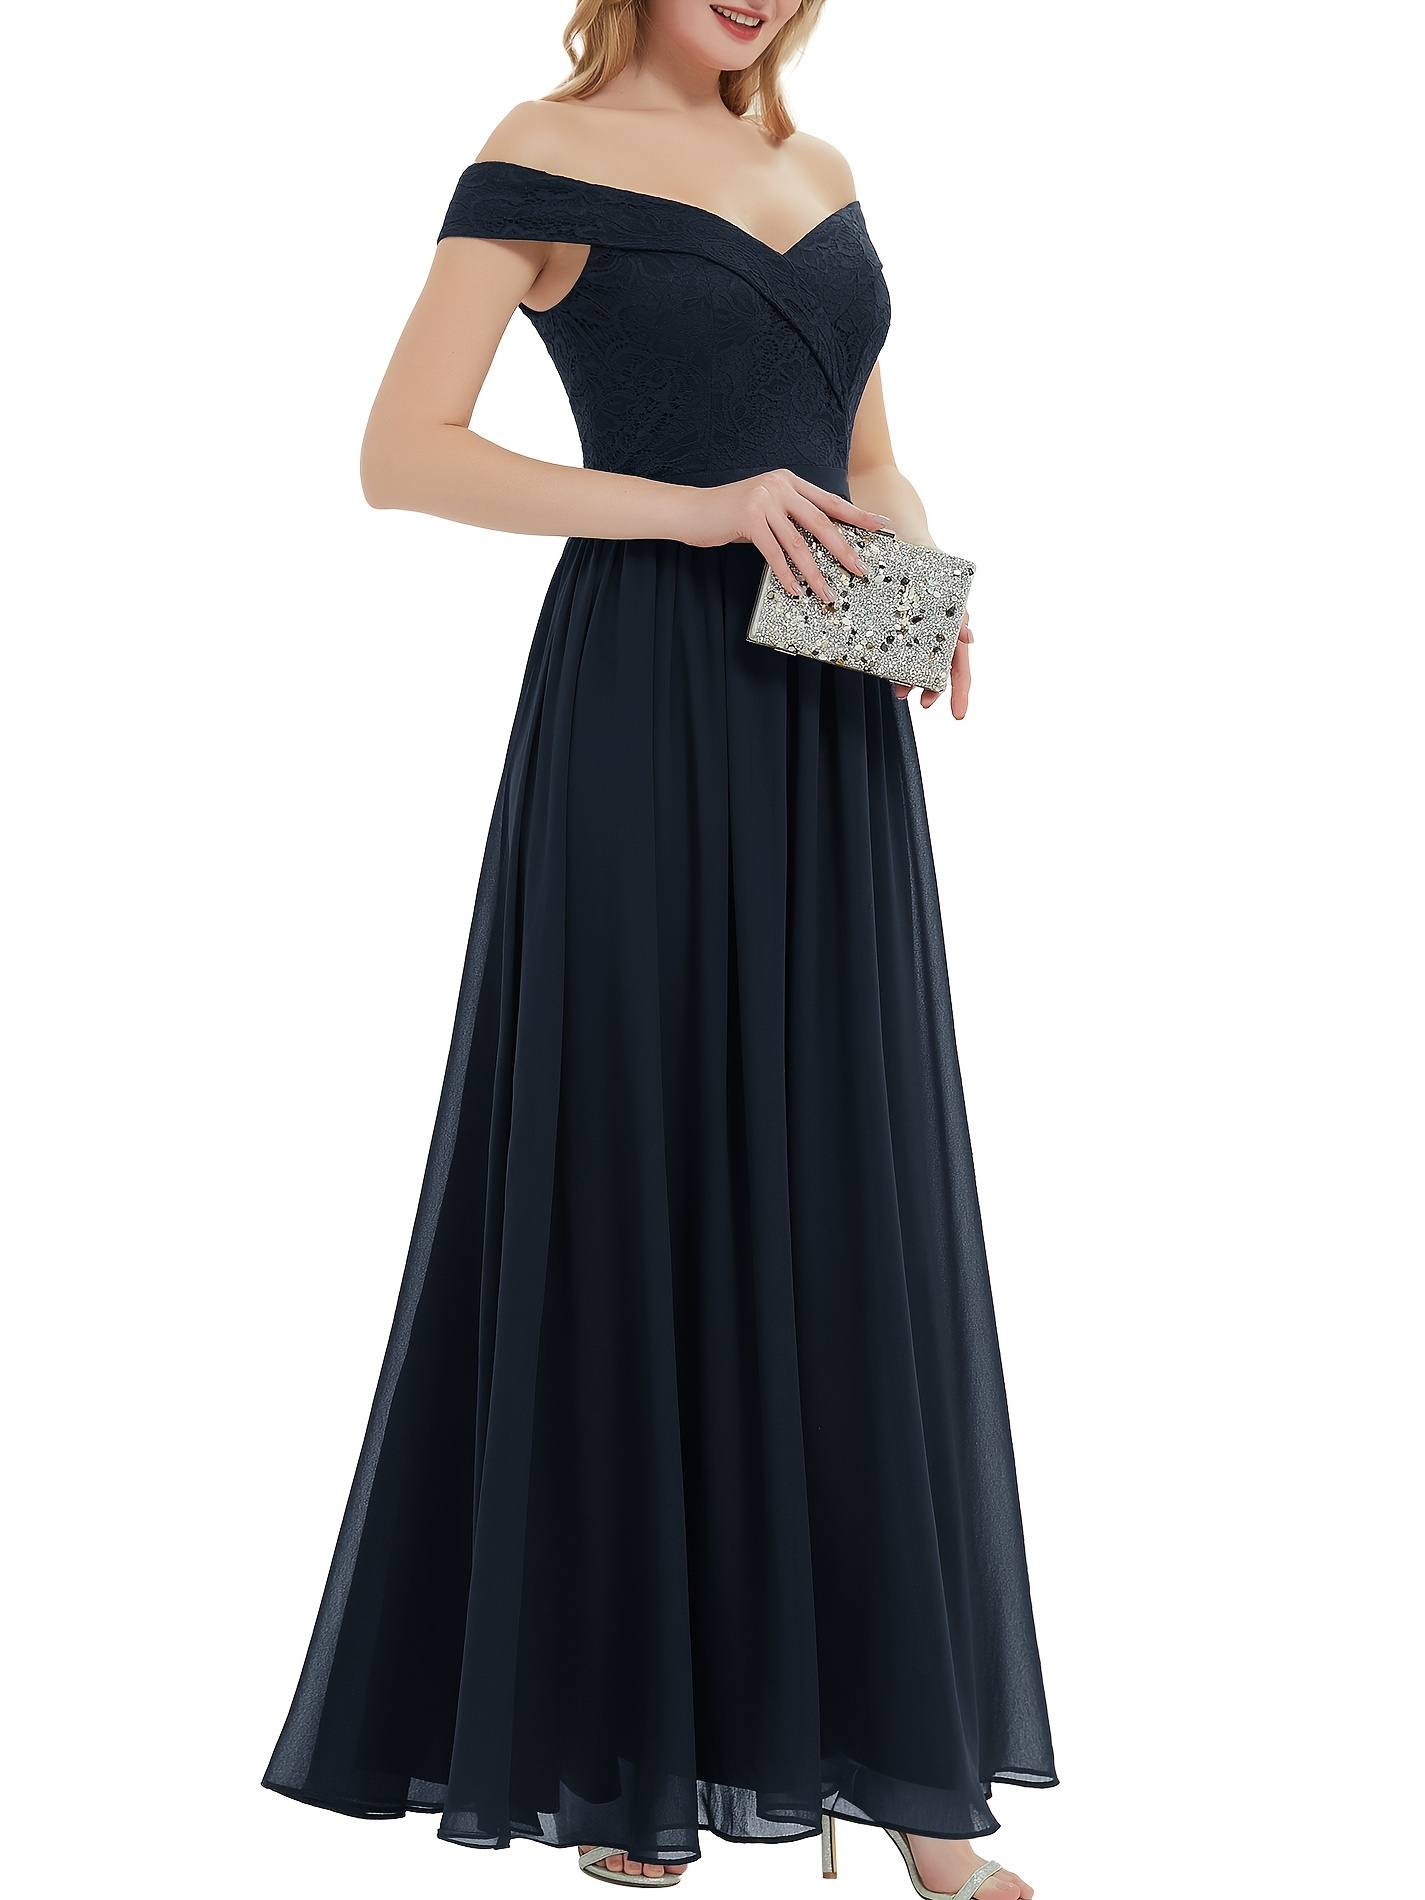  Dresses for Women Women's Dress Dresses Contrast Lace Trim Tank  Dress Dresses (Color : Black, Size : X-Large) : Clothing, Shoes & Jewelry